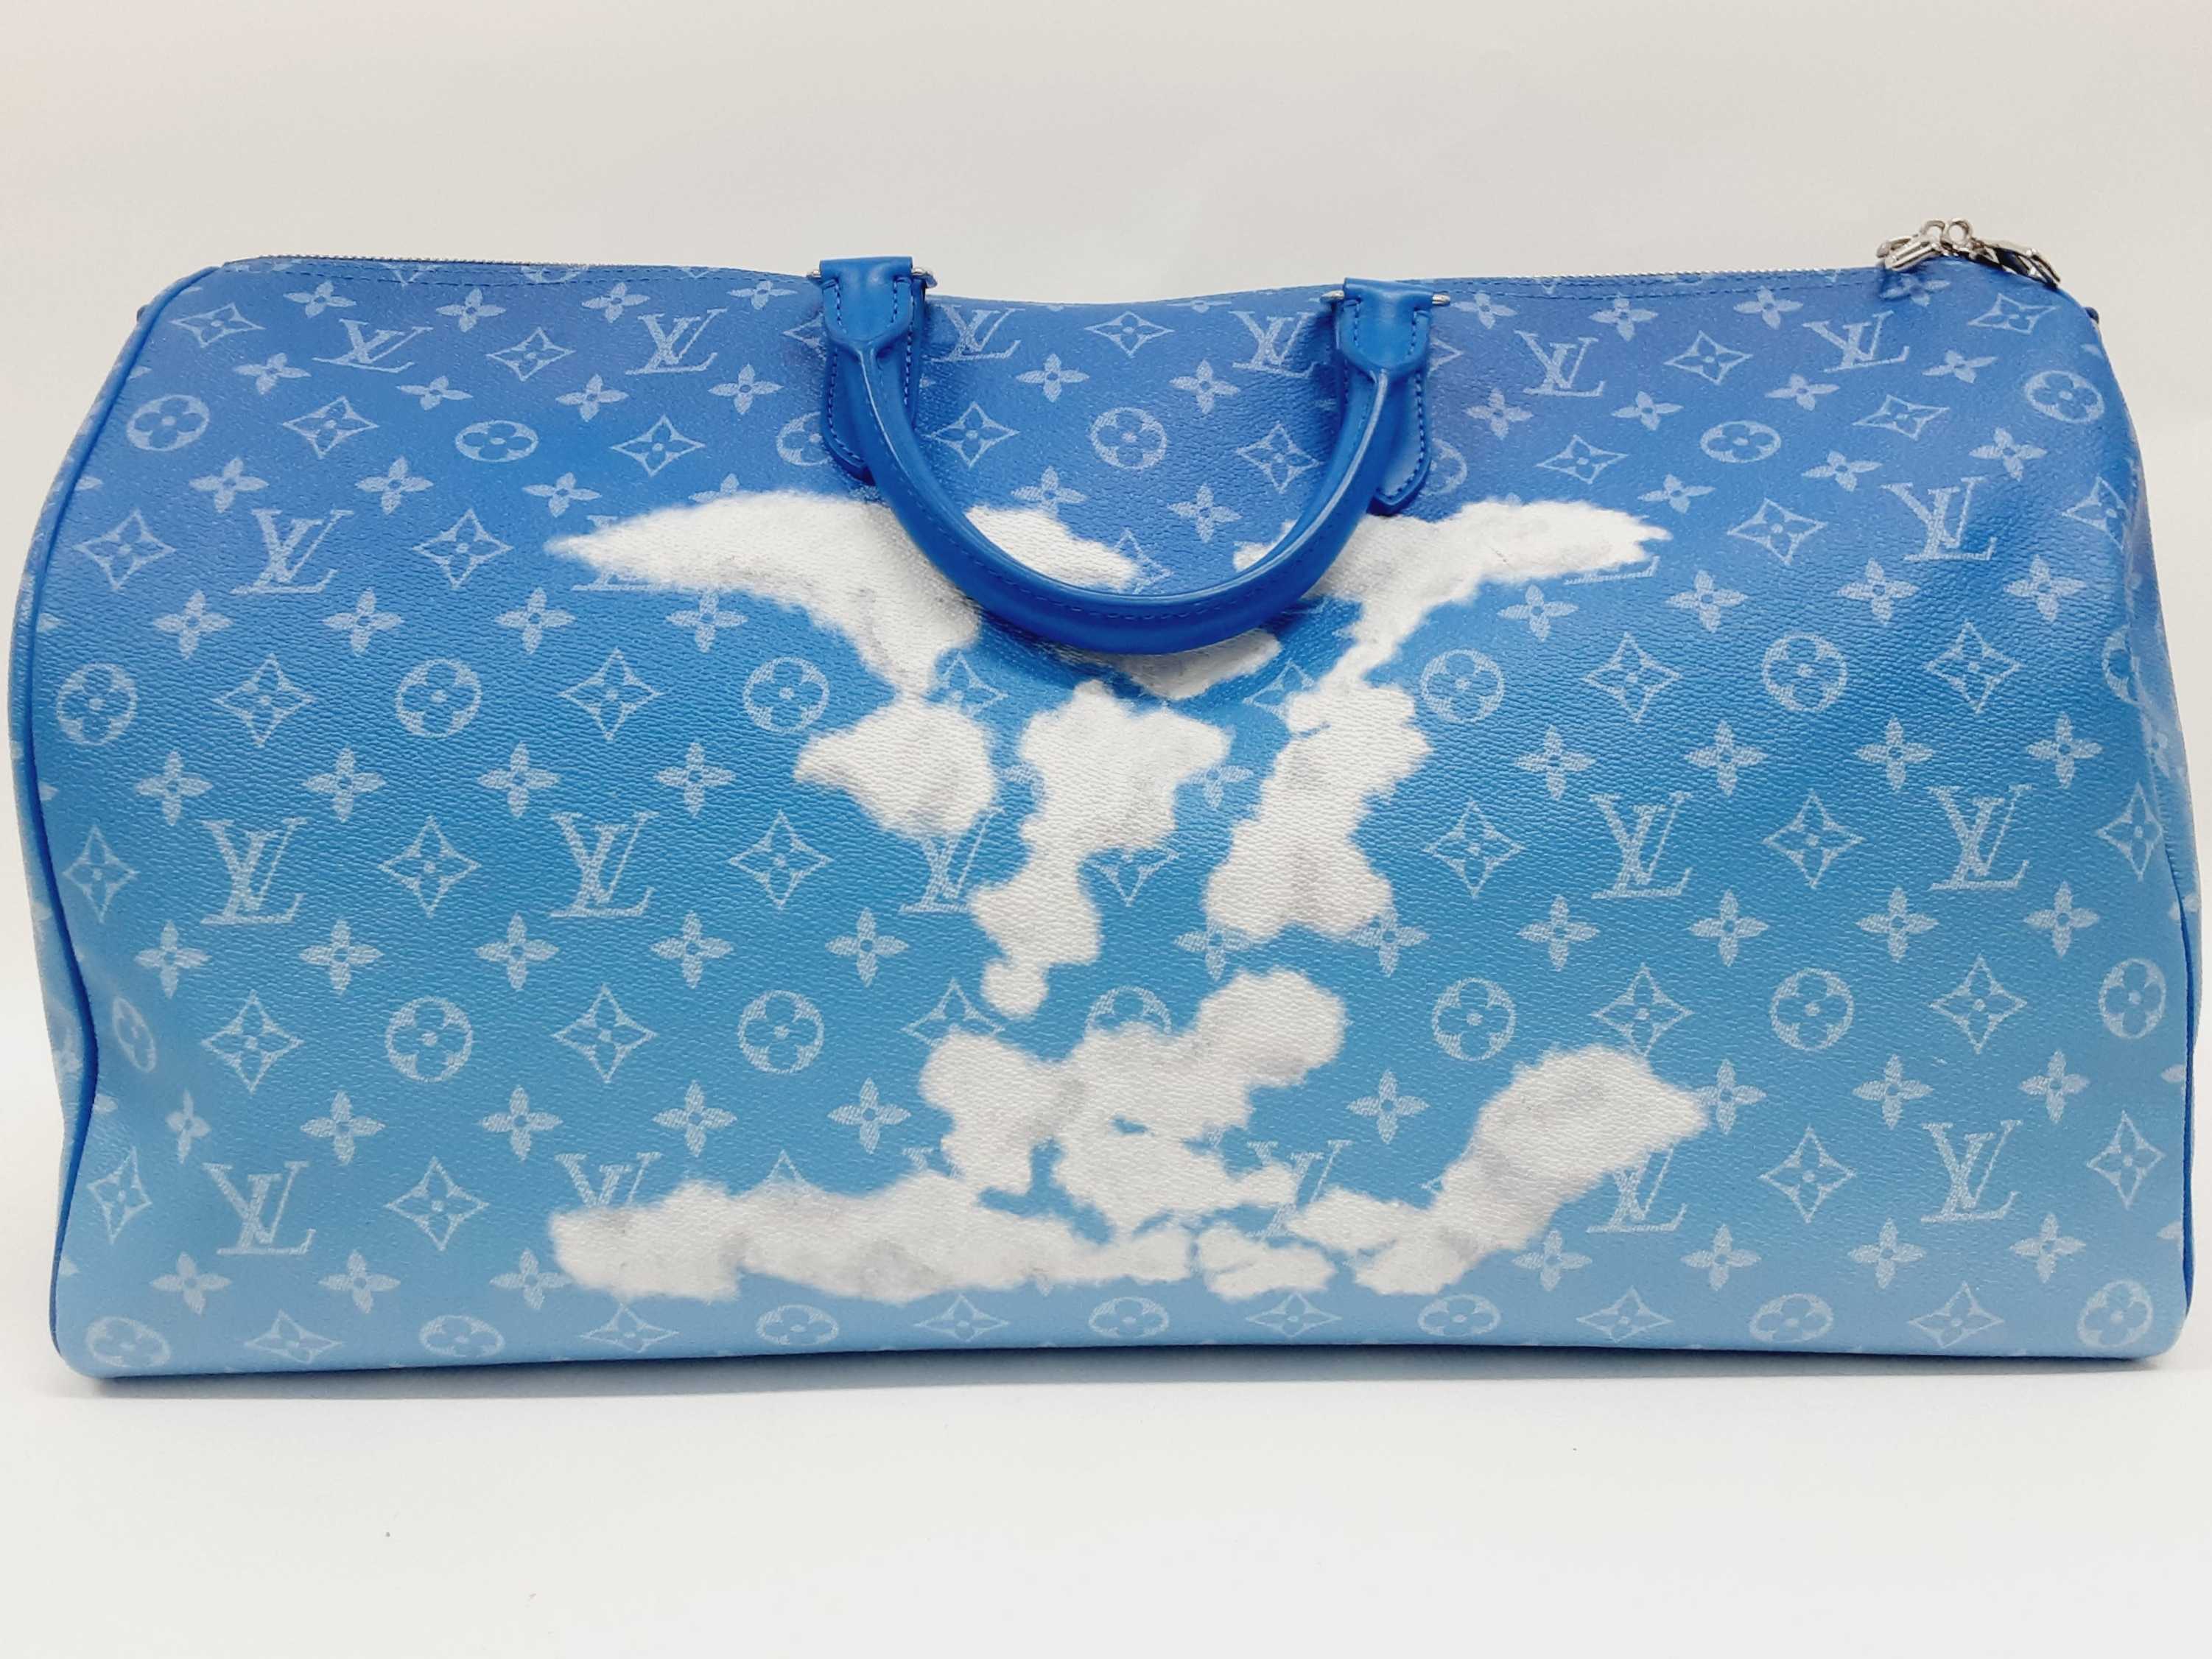 Louis Vuitton x Virgil Abloh Clouds Keepall Bandoulière 50cm (PORX) 144010017784 PS/DU